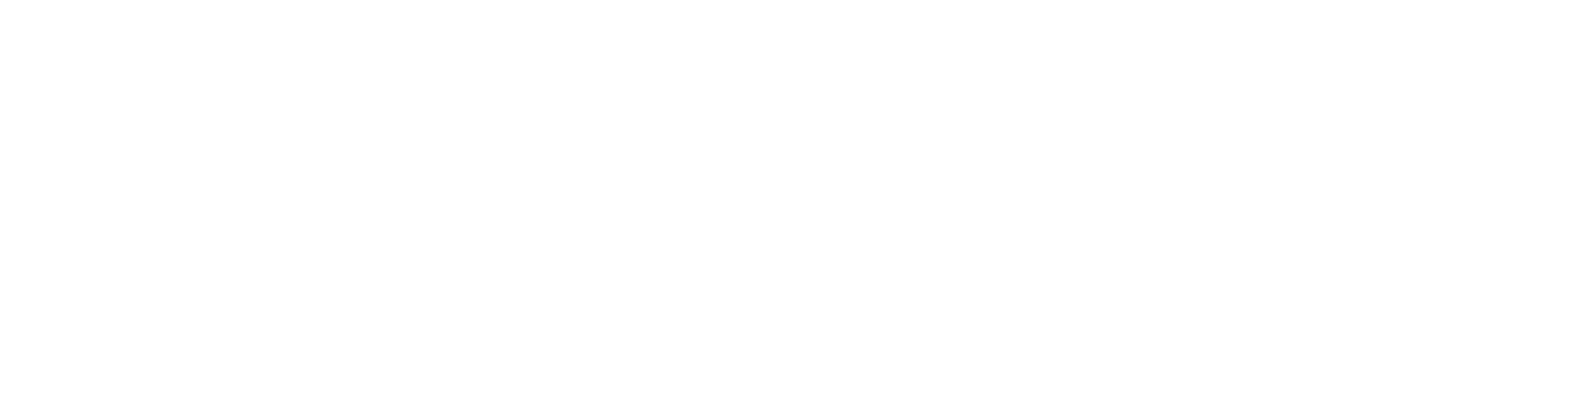 scaleme logo